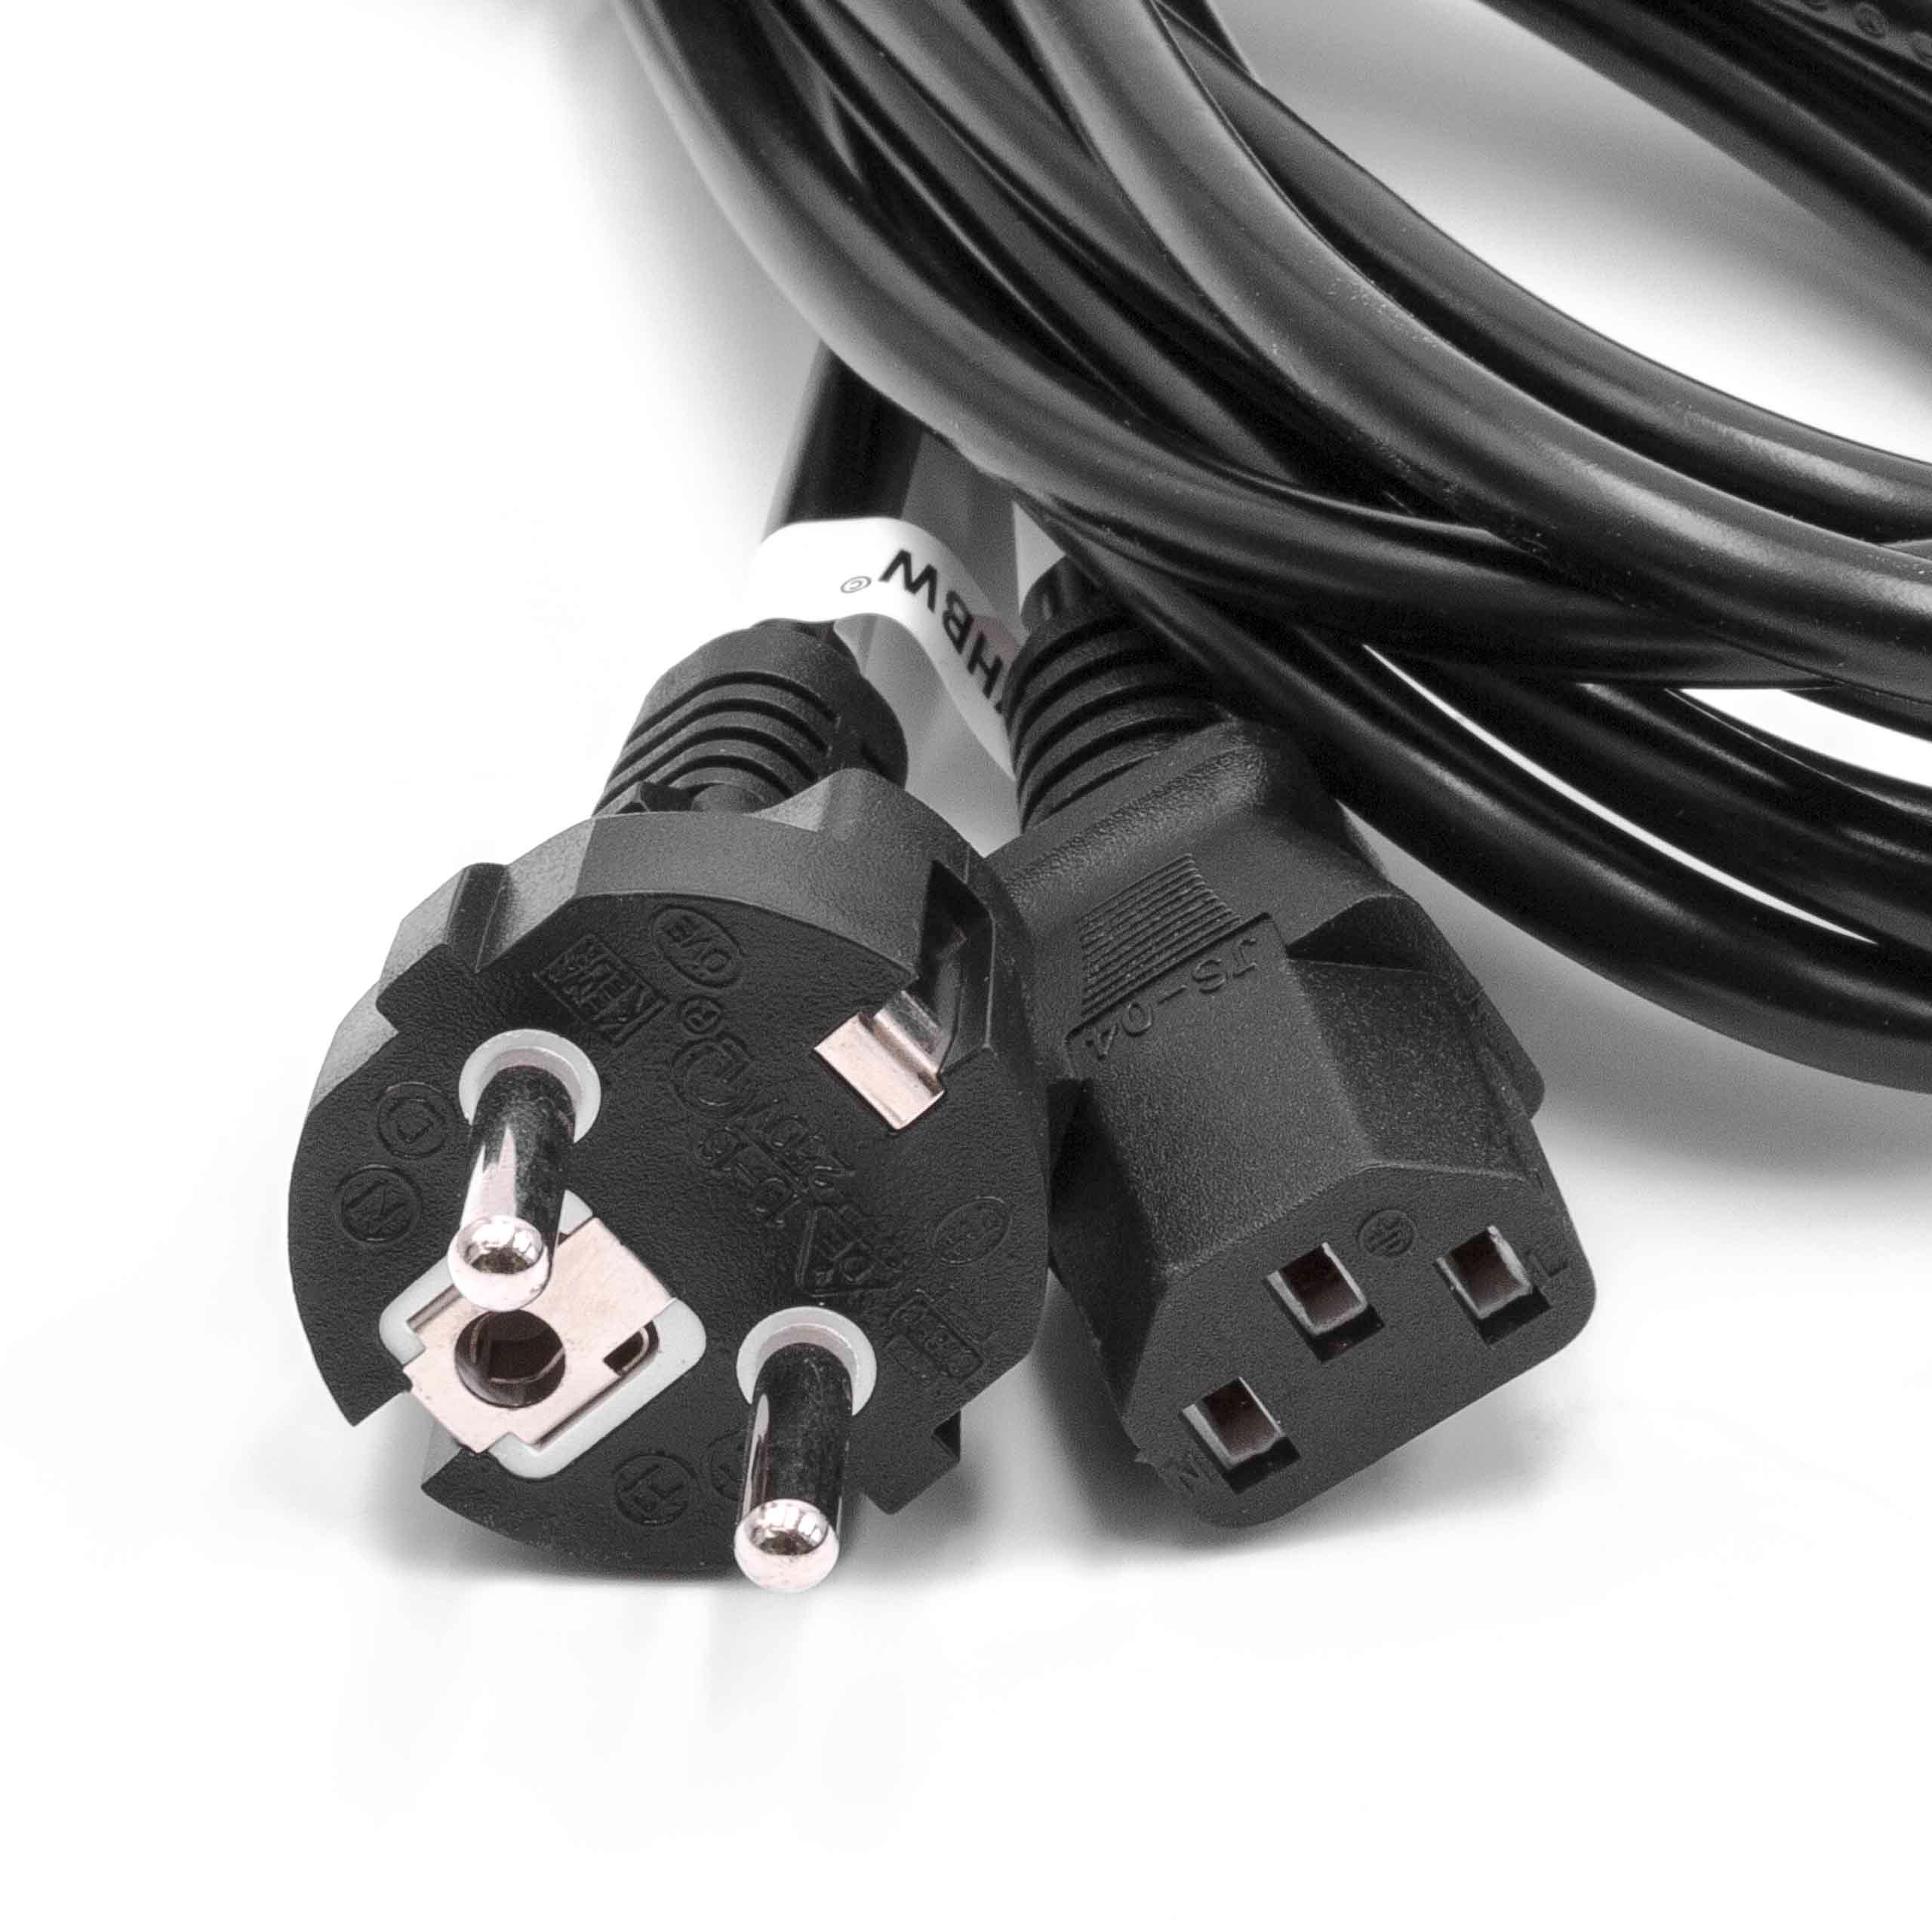 vhbw Câble connecteur euro type F compatible avec appareils électriques comme PC moniteur - Prise C13, 5m